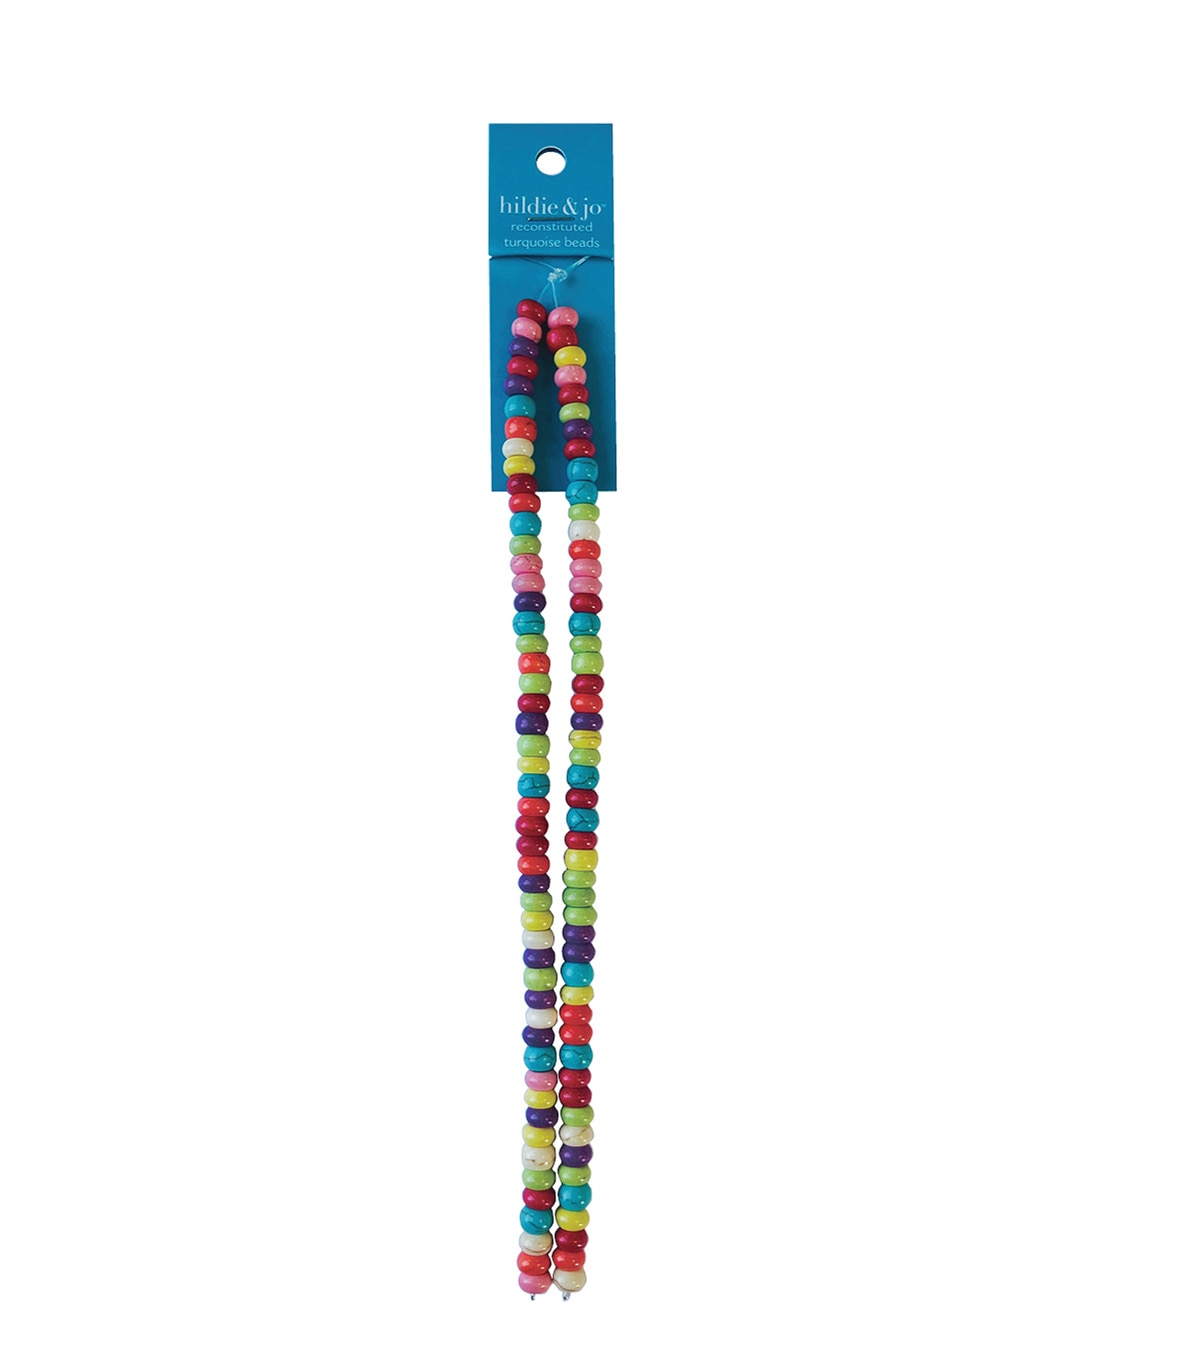 hildie & jo 6mm Abacus Strung Beads-Multi | JOANN